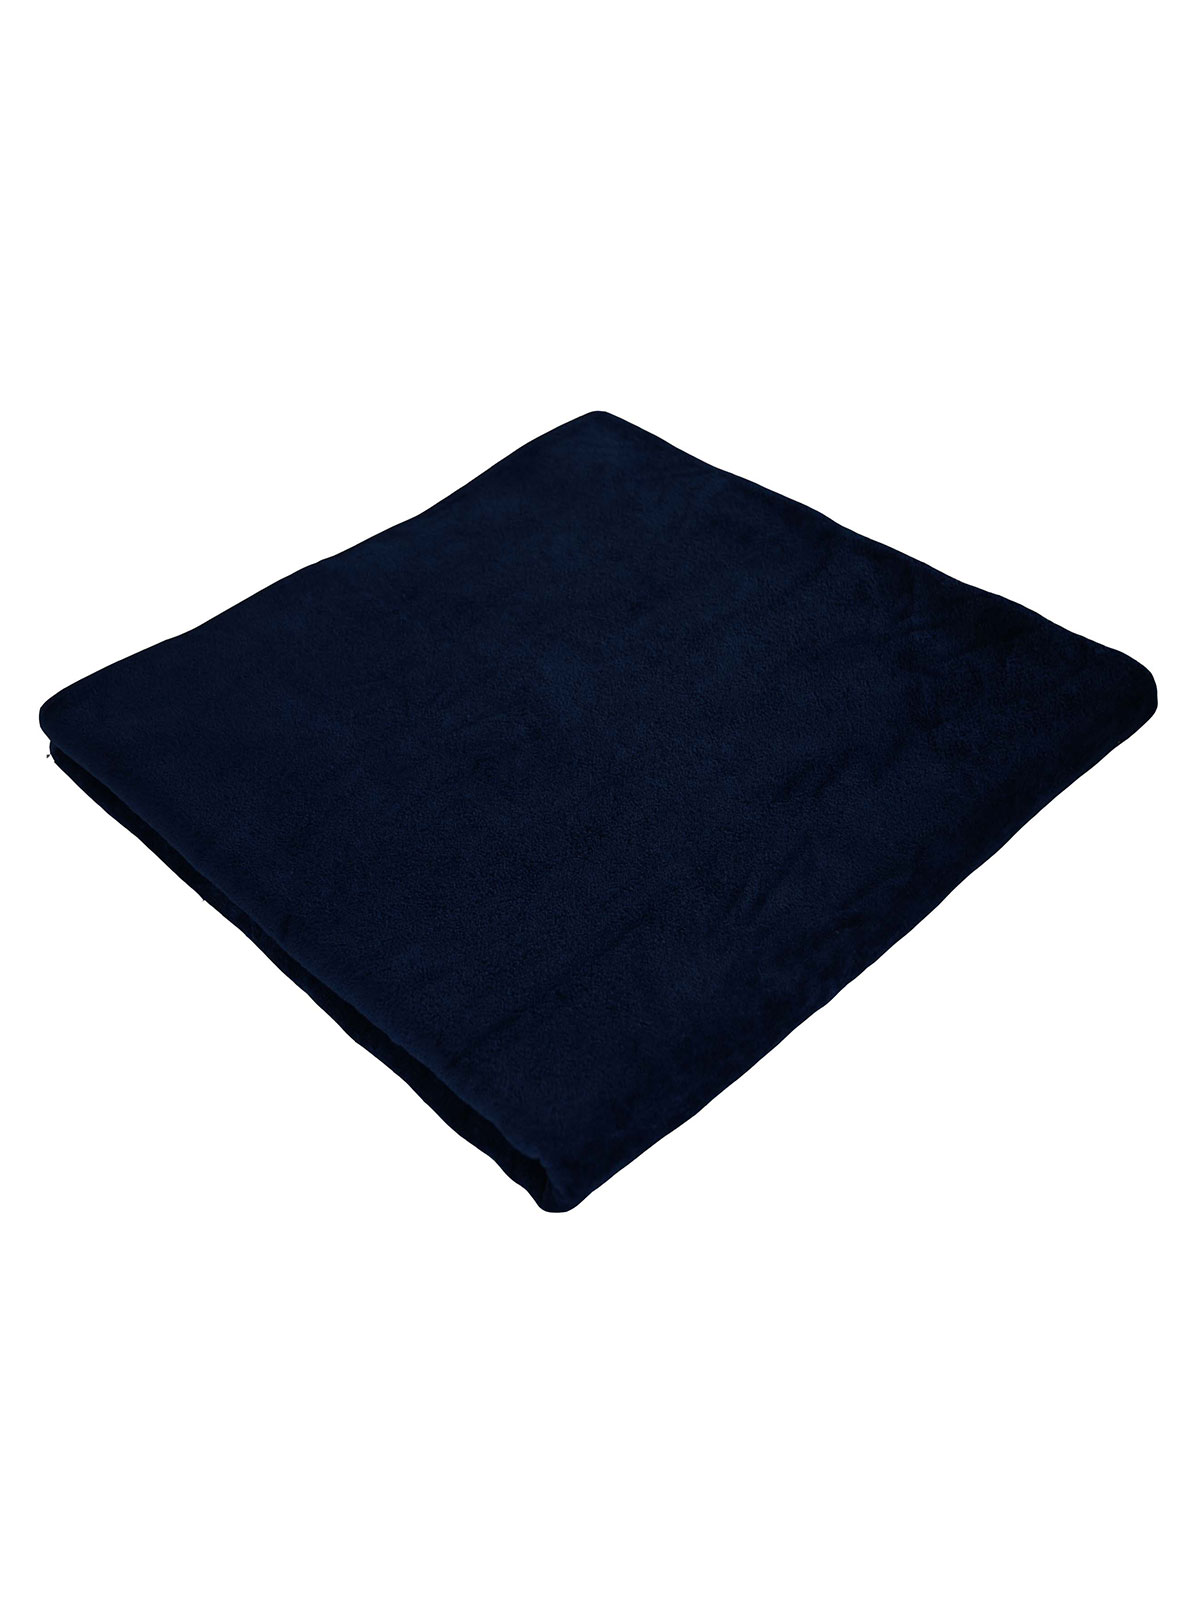 velour-towel-90x180-navy.webp